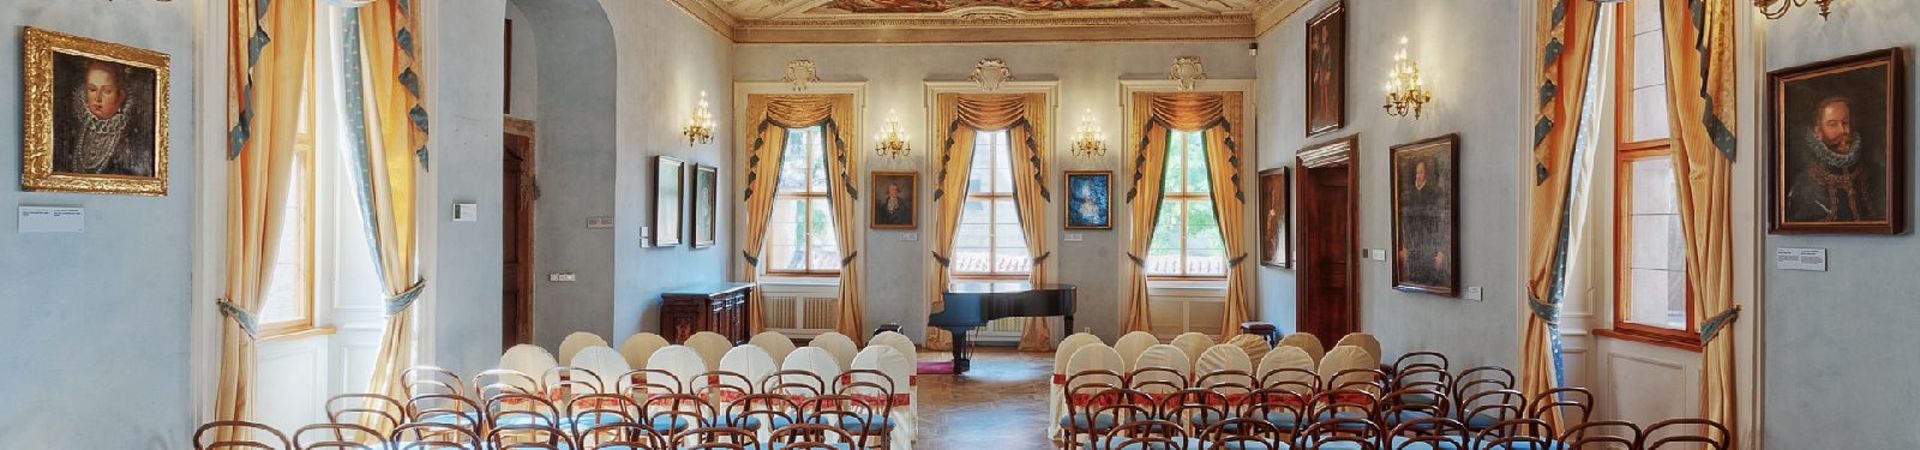 Lobkowiczký palác - Pražský hrad - Koncertní sál